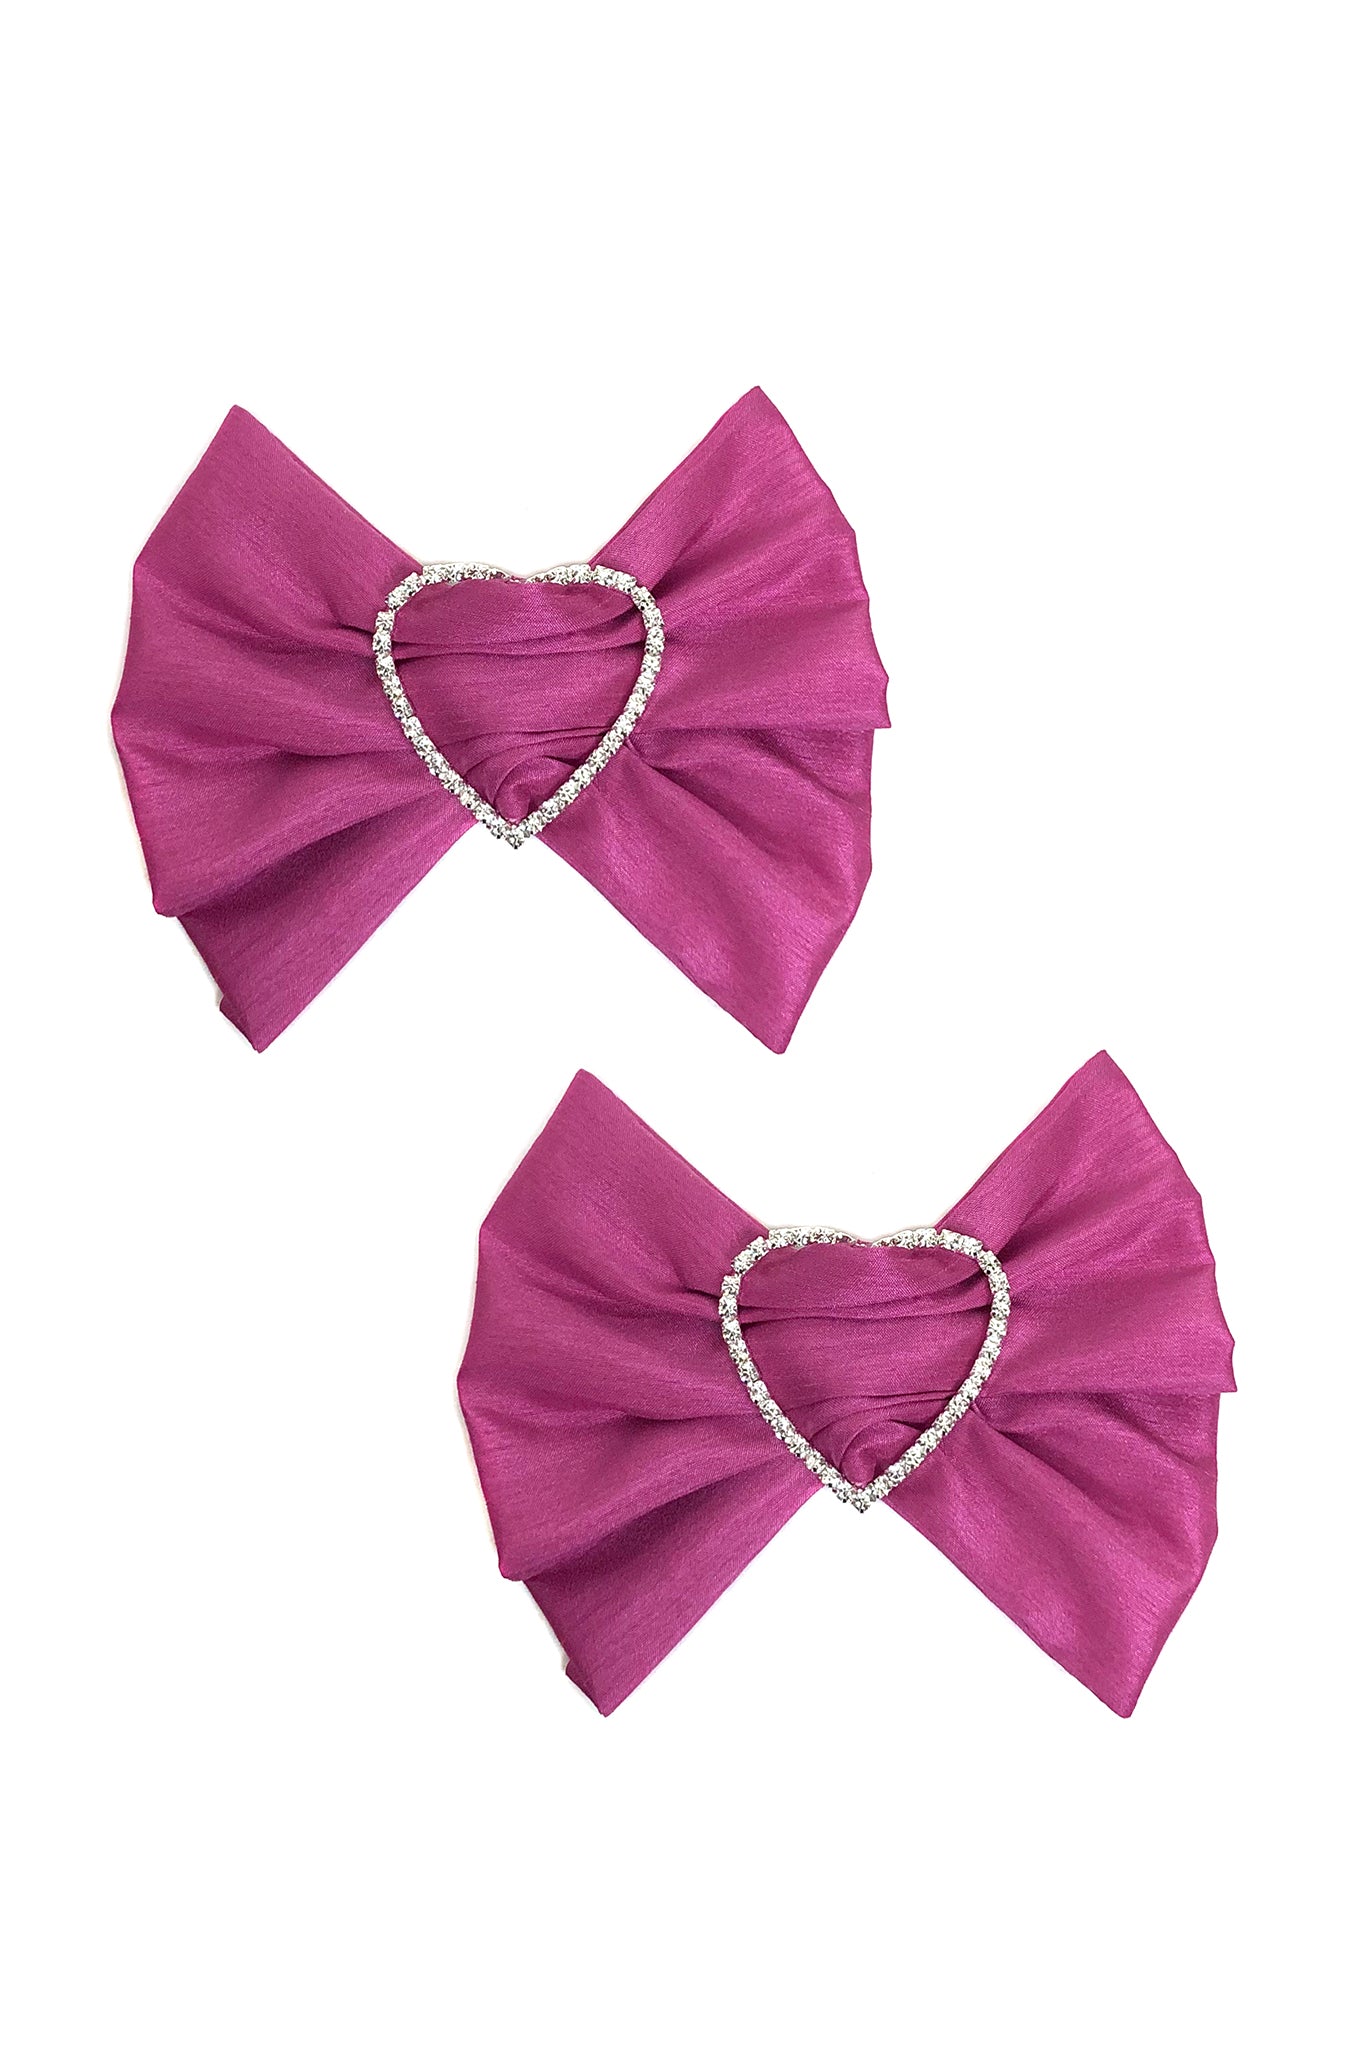 Merrfer Bow Earrings, Pink